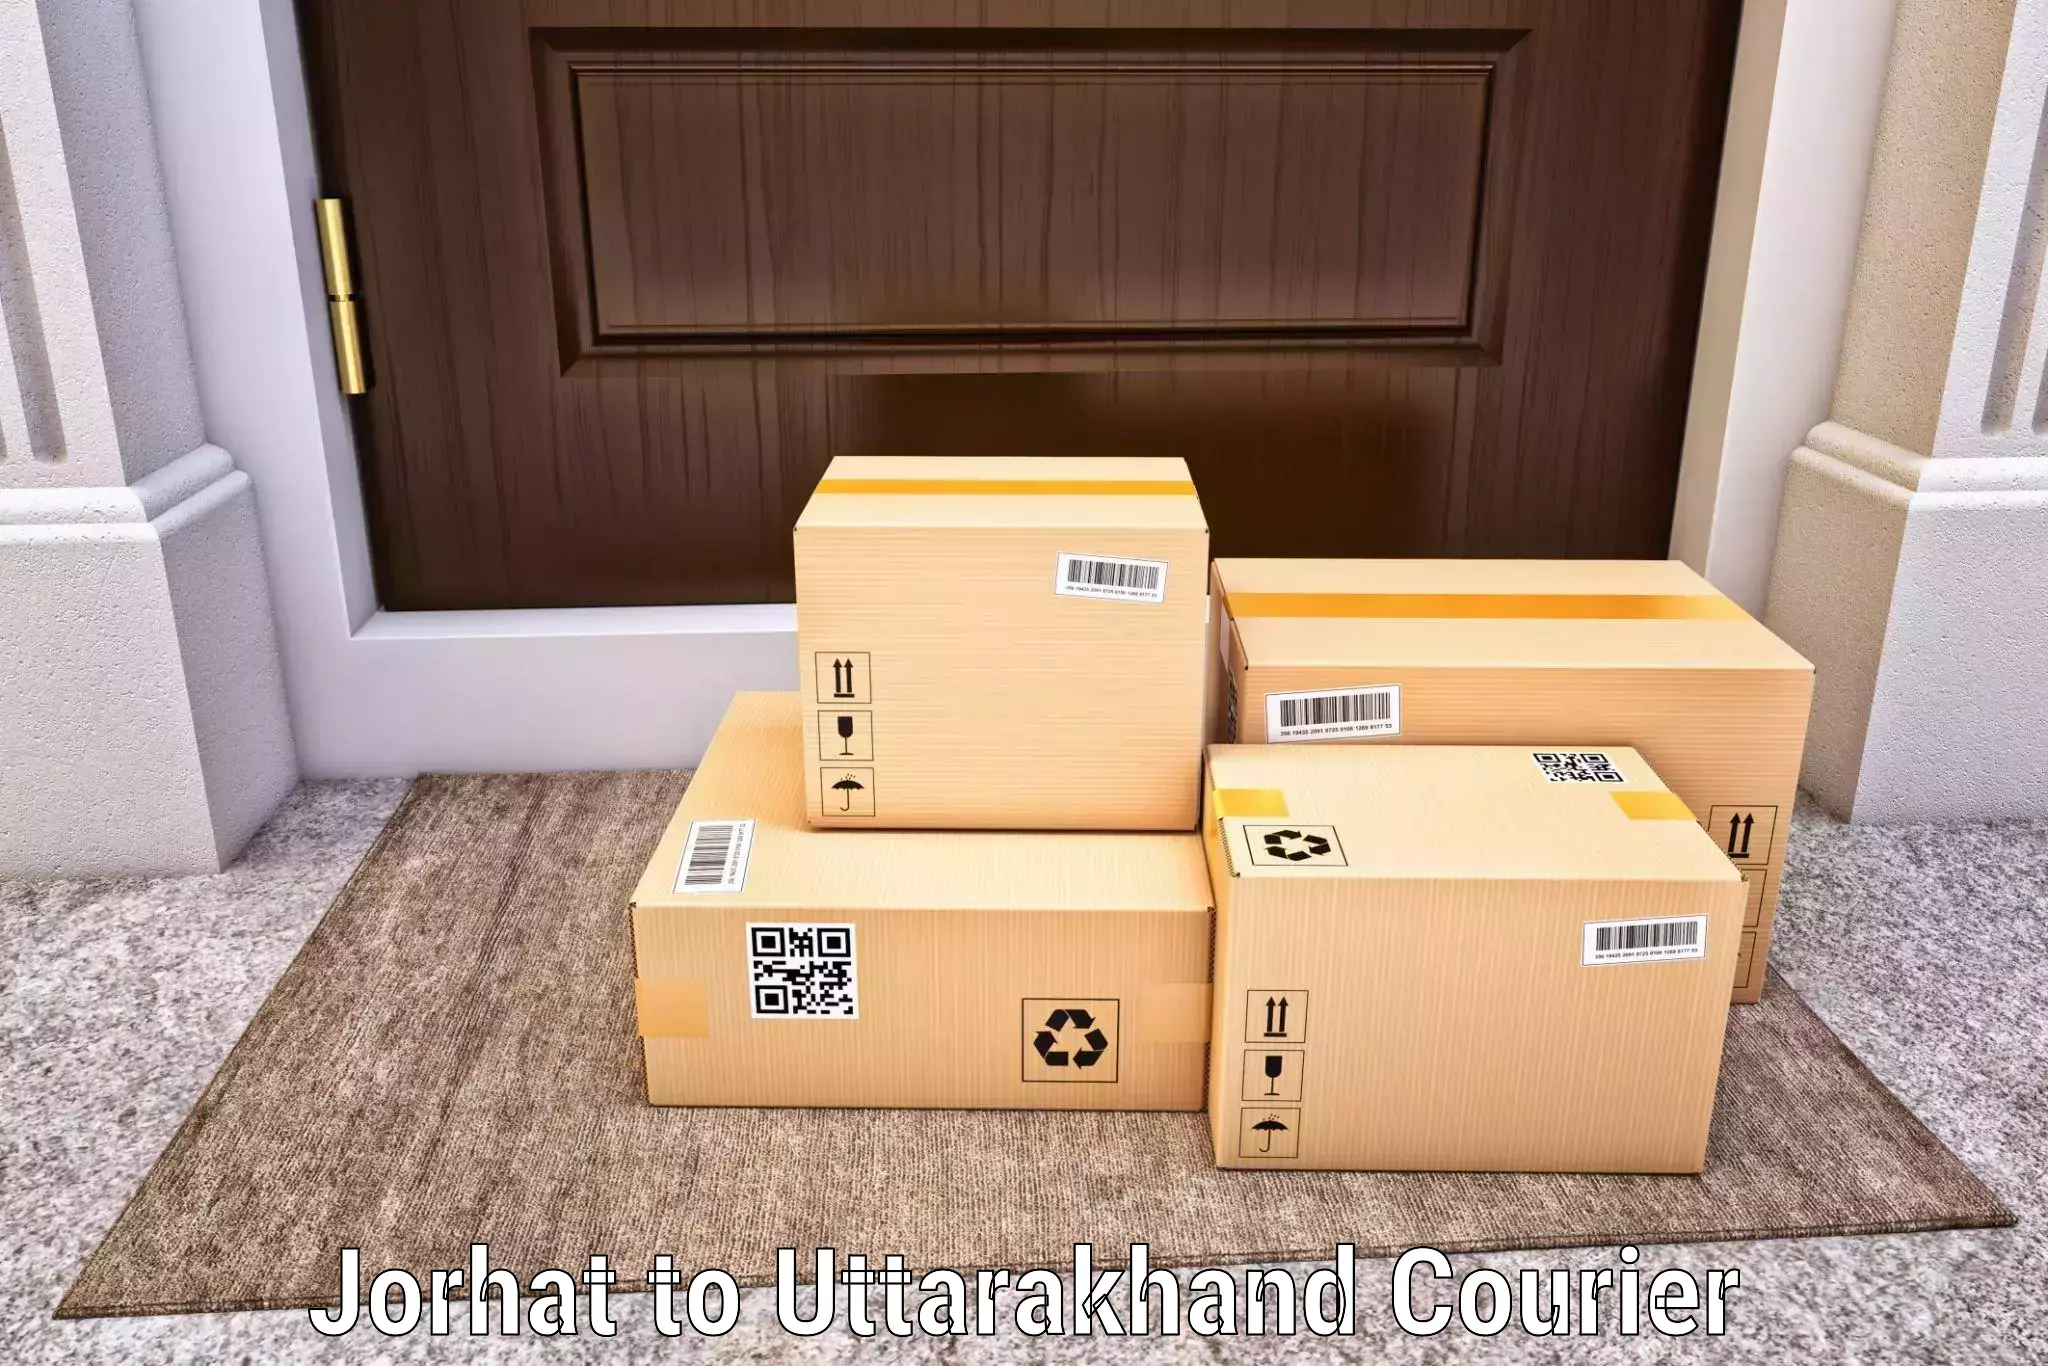 Cost-effective courier options Jorhat to Mussoorie